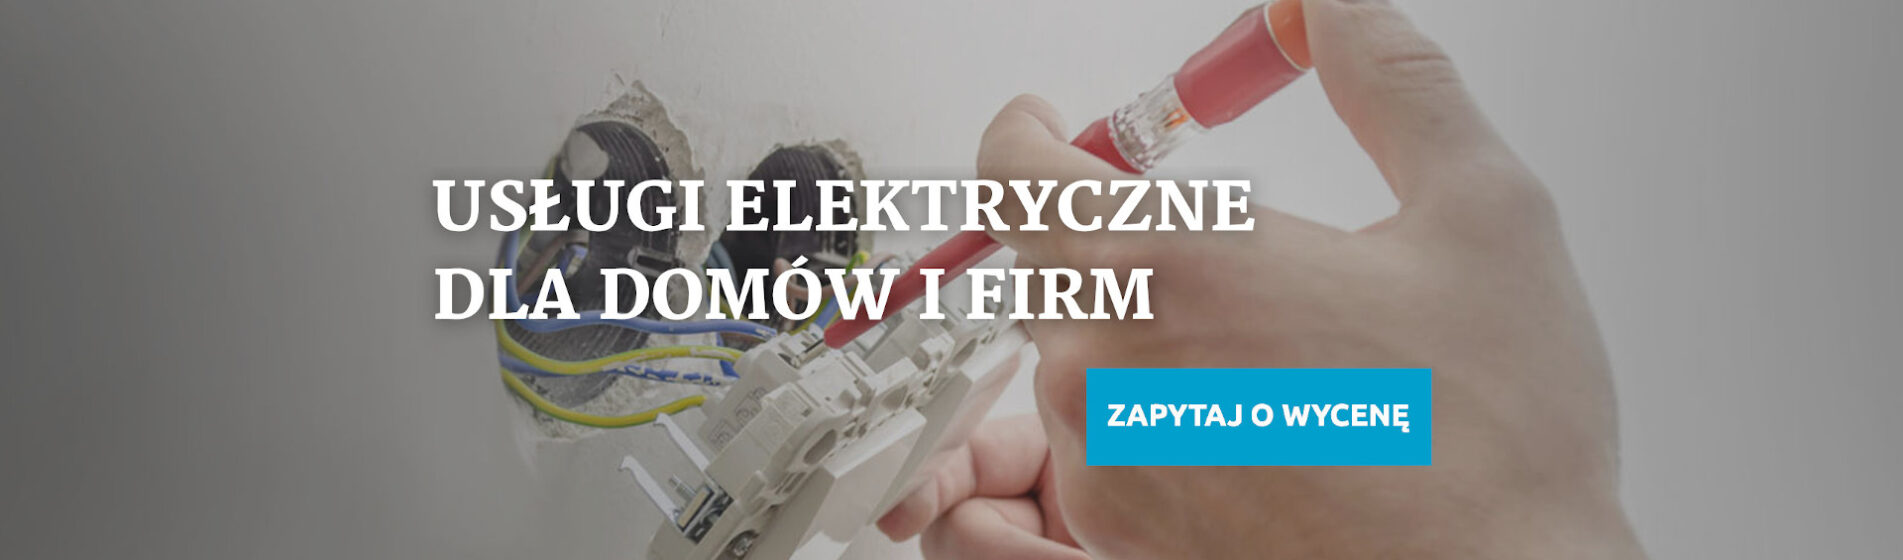 Uslugi elektryczne dla domow i firm - EL-MAG Usługi elektryczne Bielsko-Biała